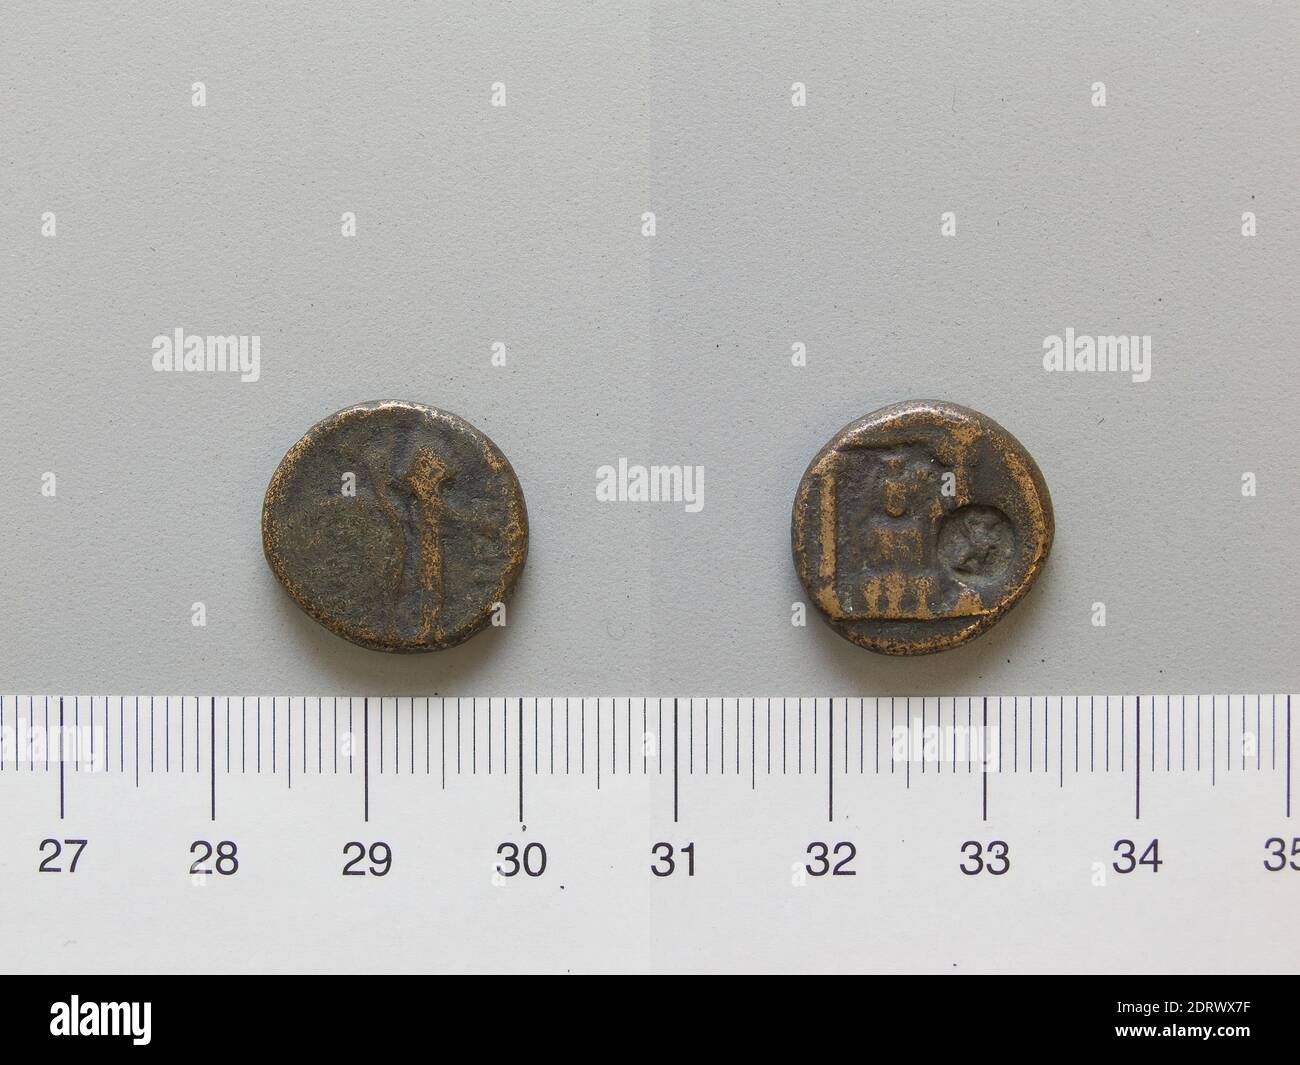 Menta: Perge, moneta da Perge, ca. II secolo a.C., rame, 5.00 g, 12:00, 17.1 mm, Made in Perge, Pampilia, Roman, II secolo a.C., Numismatica Foto Stock